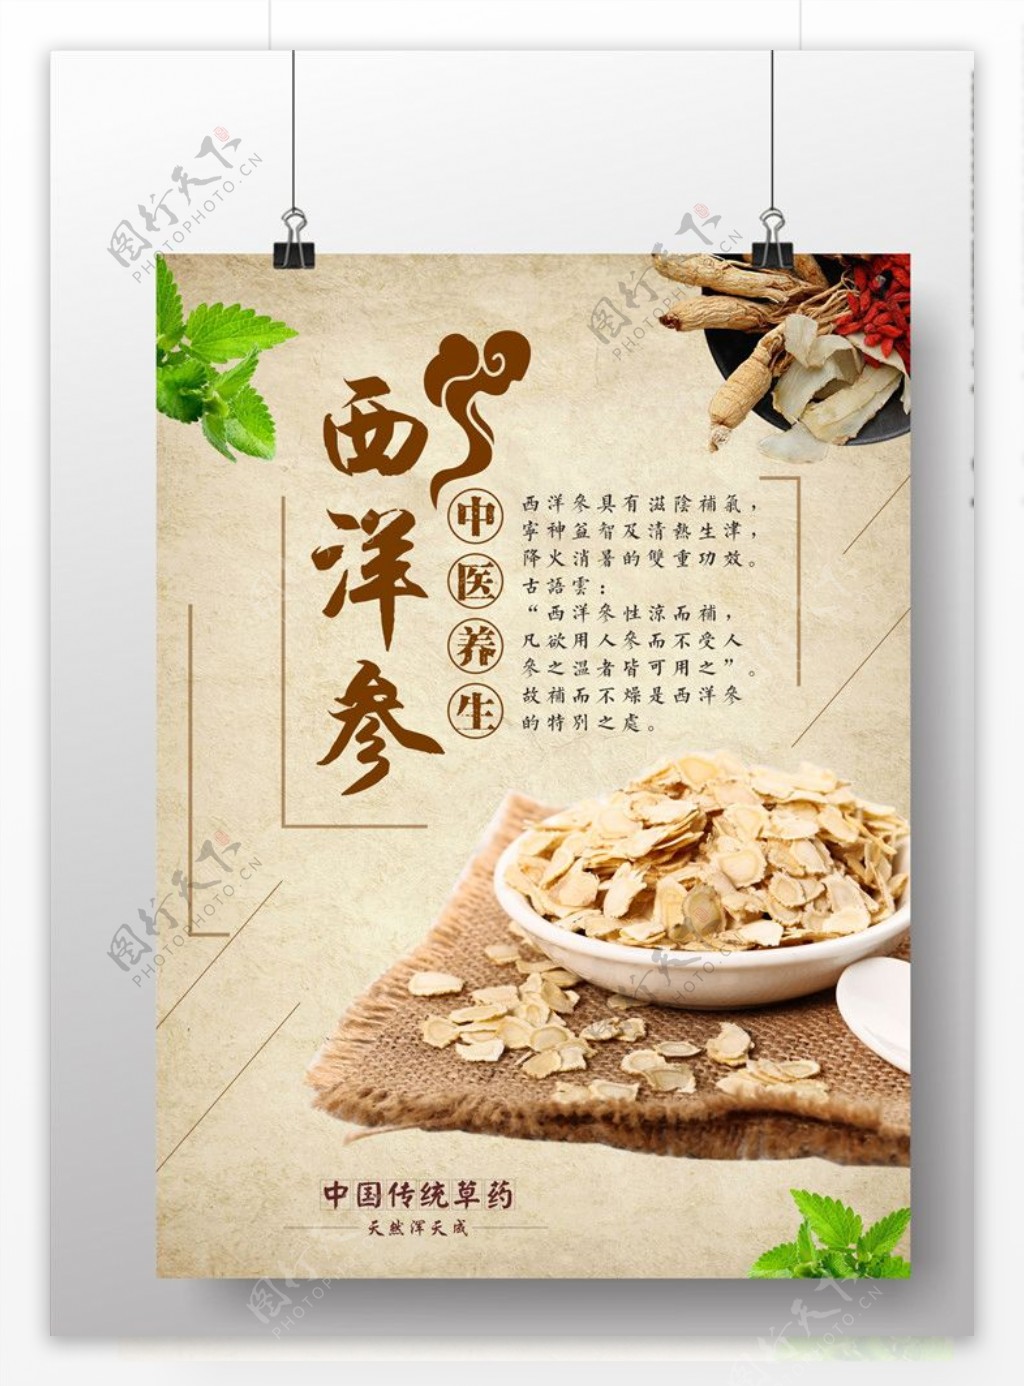 西洋参中国传统药材海报